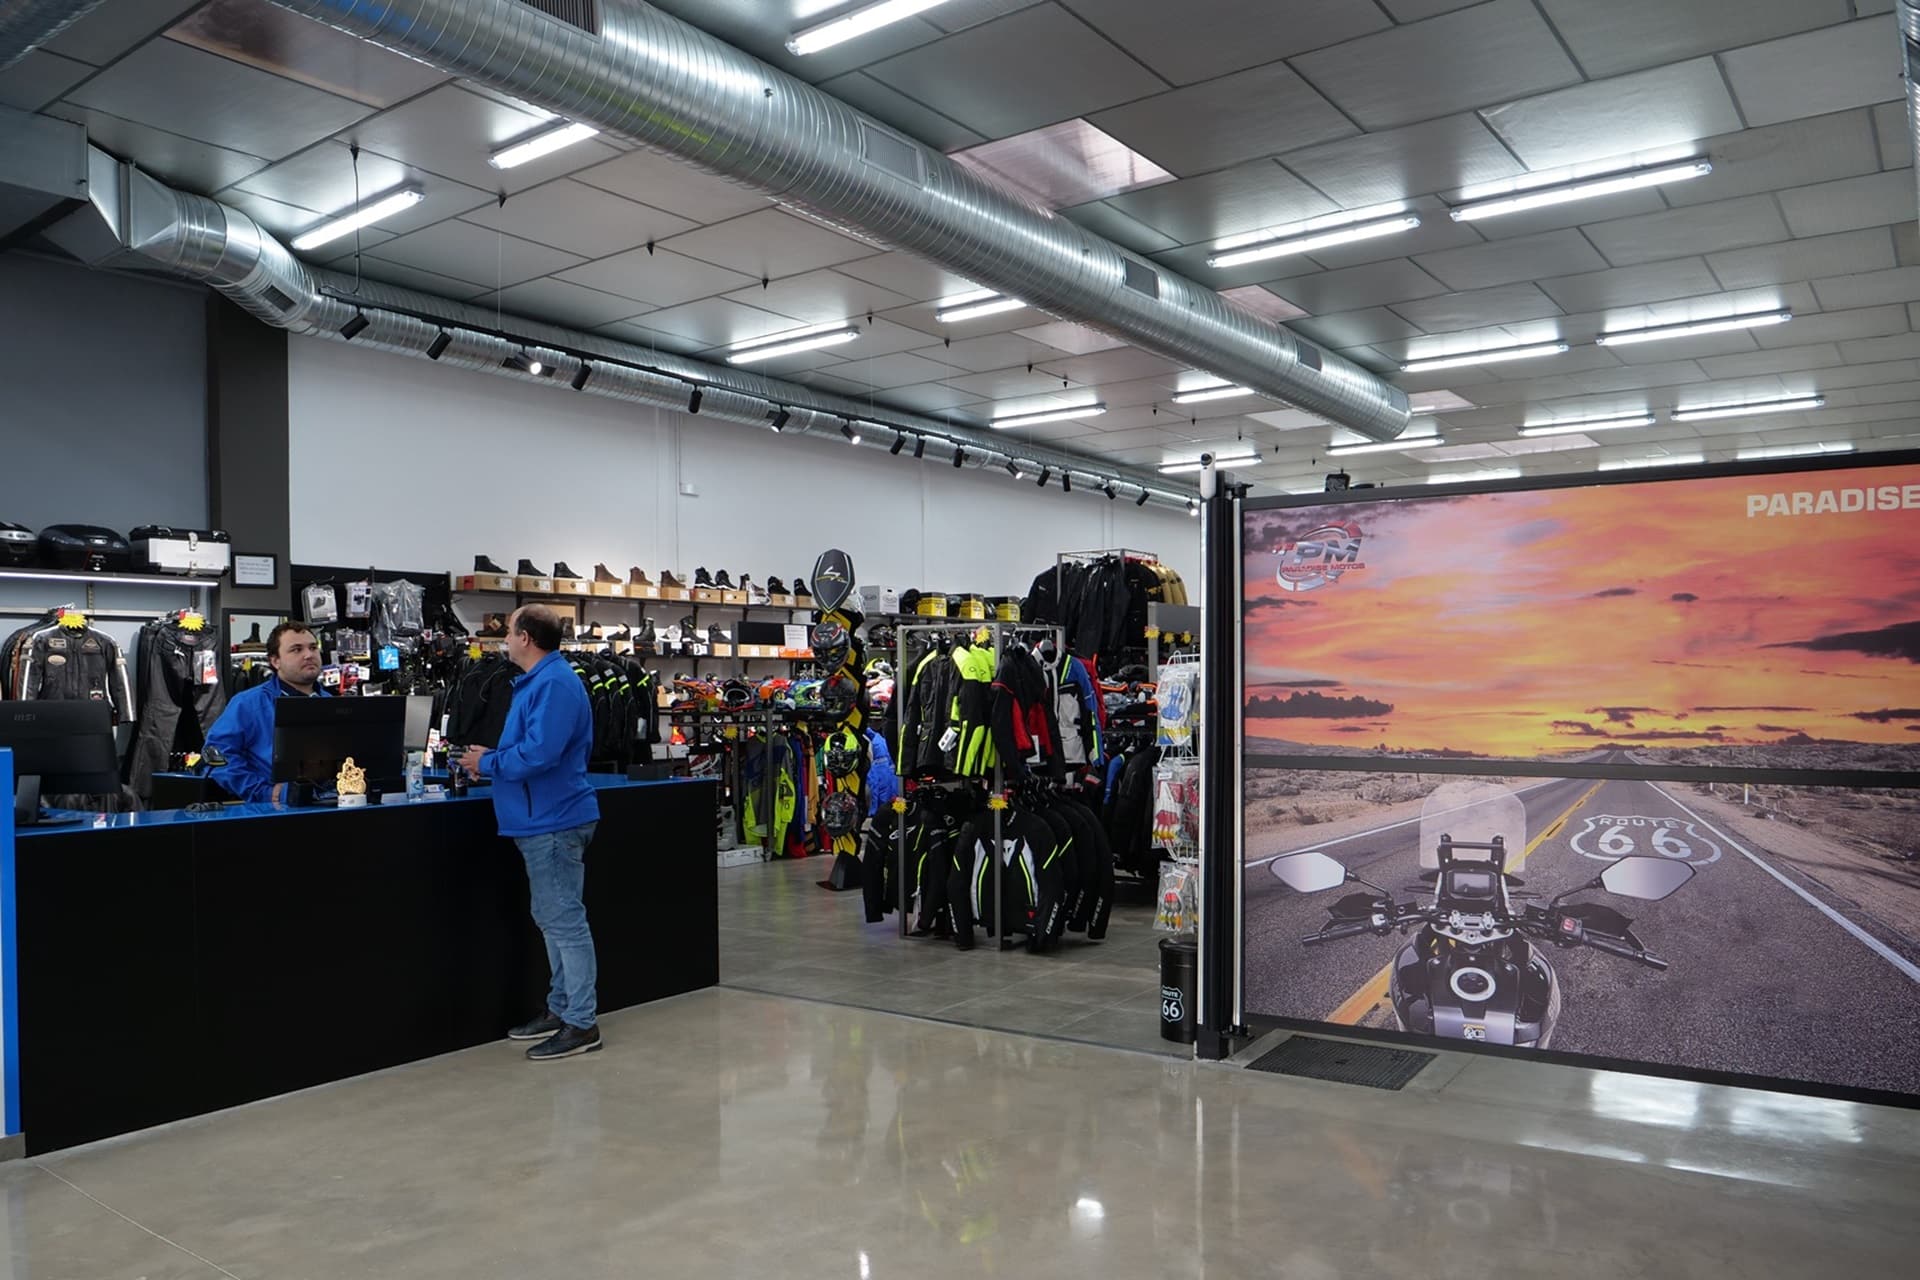 Royal Enfield inaugura Paradise Motos, su nueva tienda en Jaén